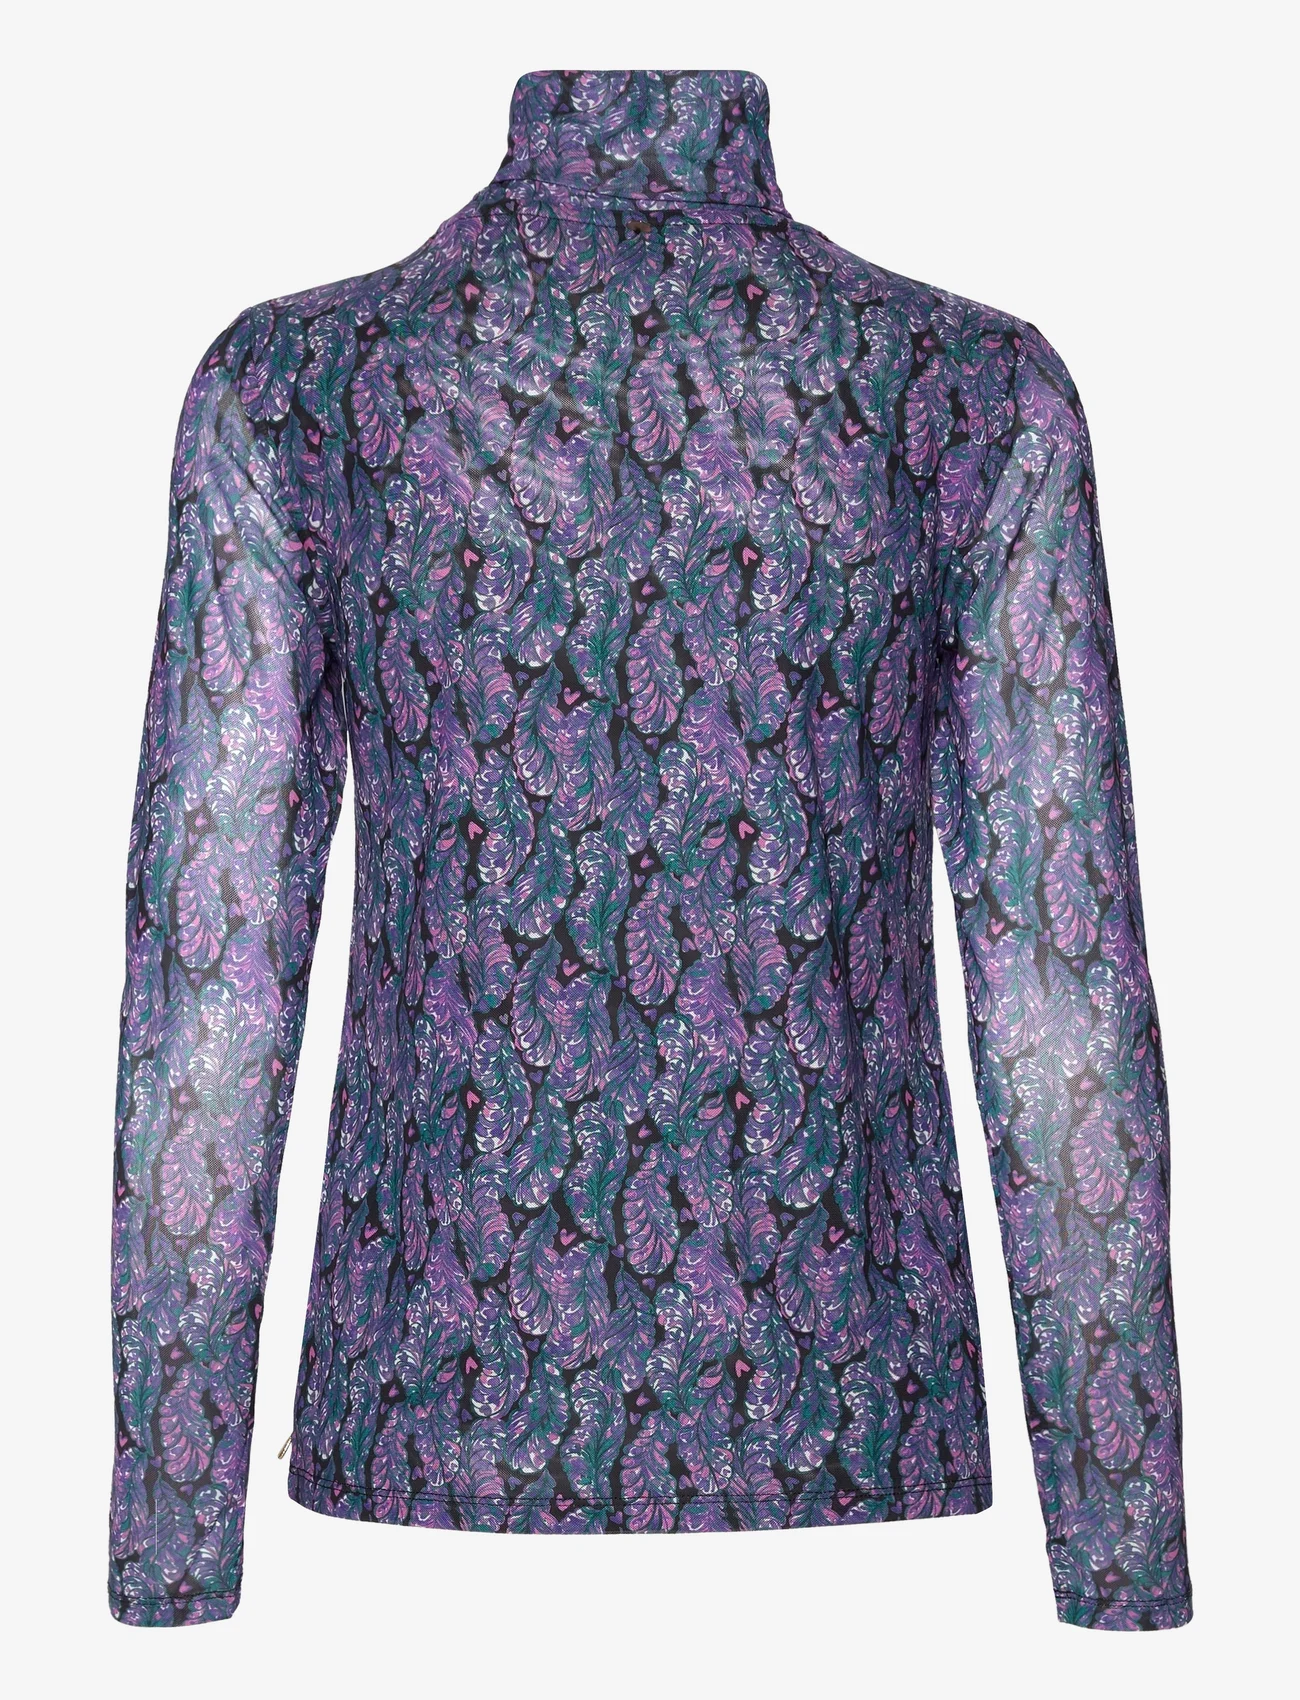 Fabienne Chapot - Michou Top - bluzki z długimi rękawami - antra/poppy purple - 1